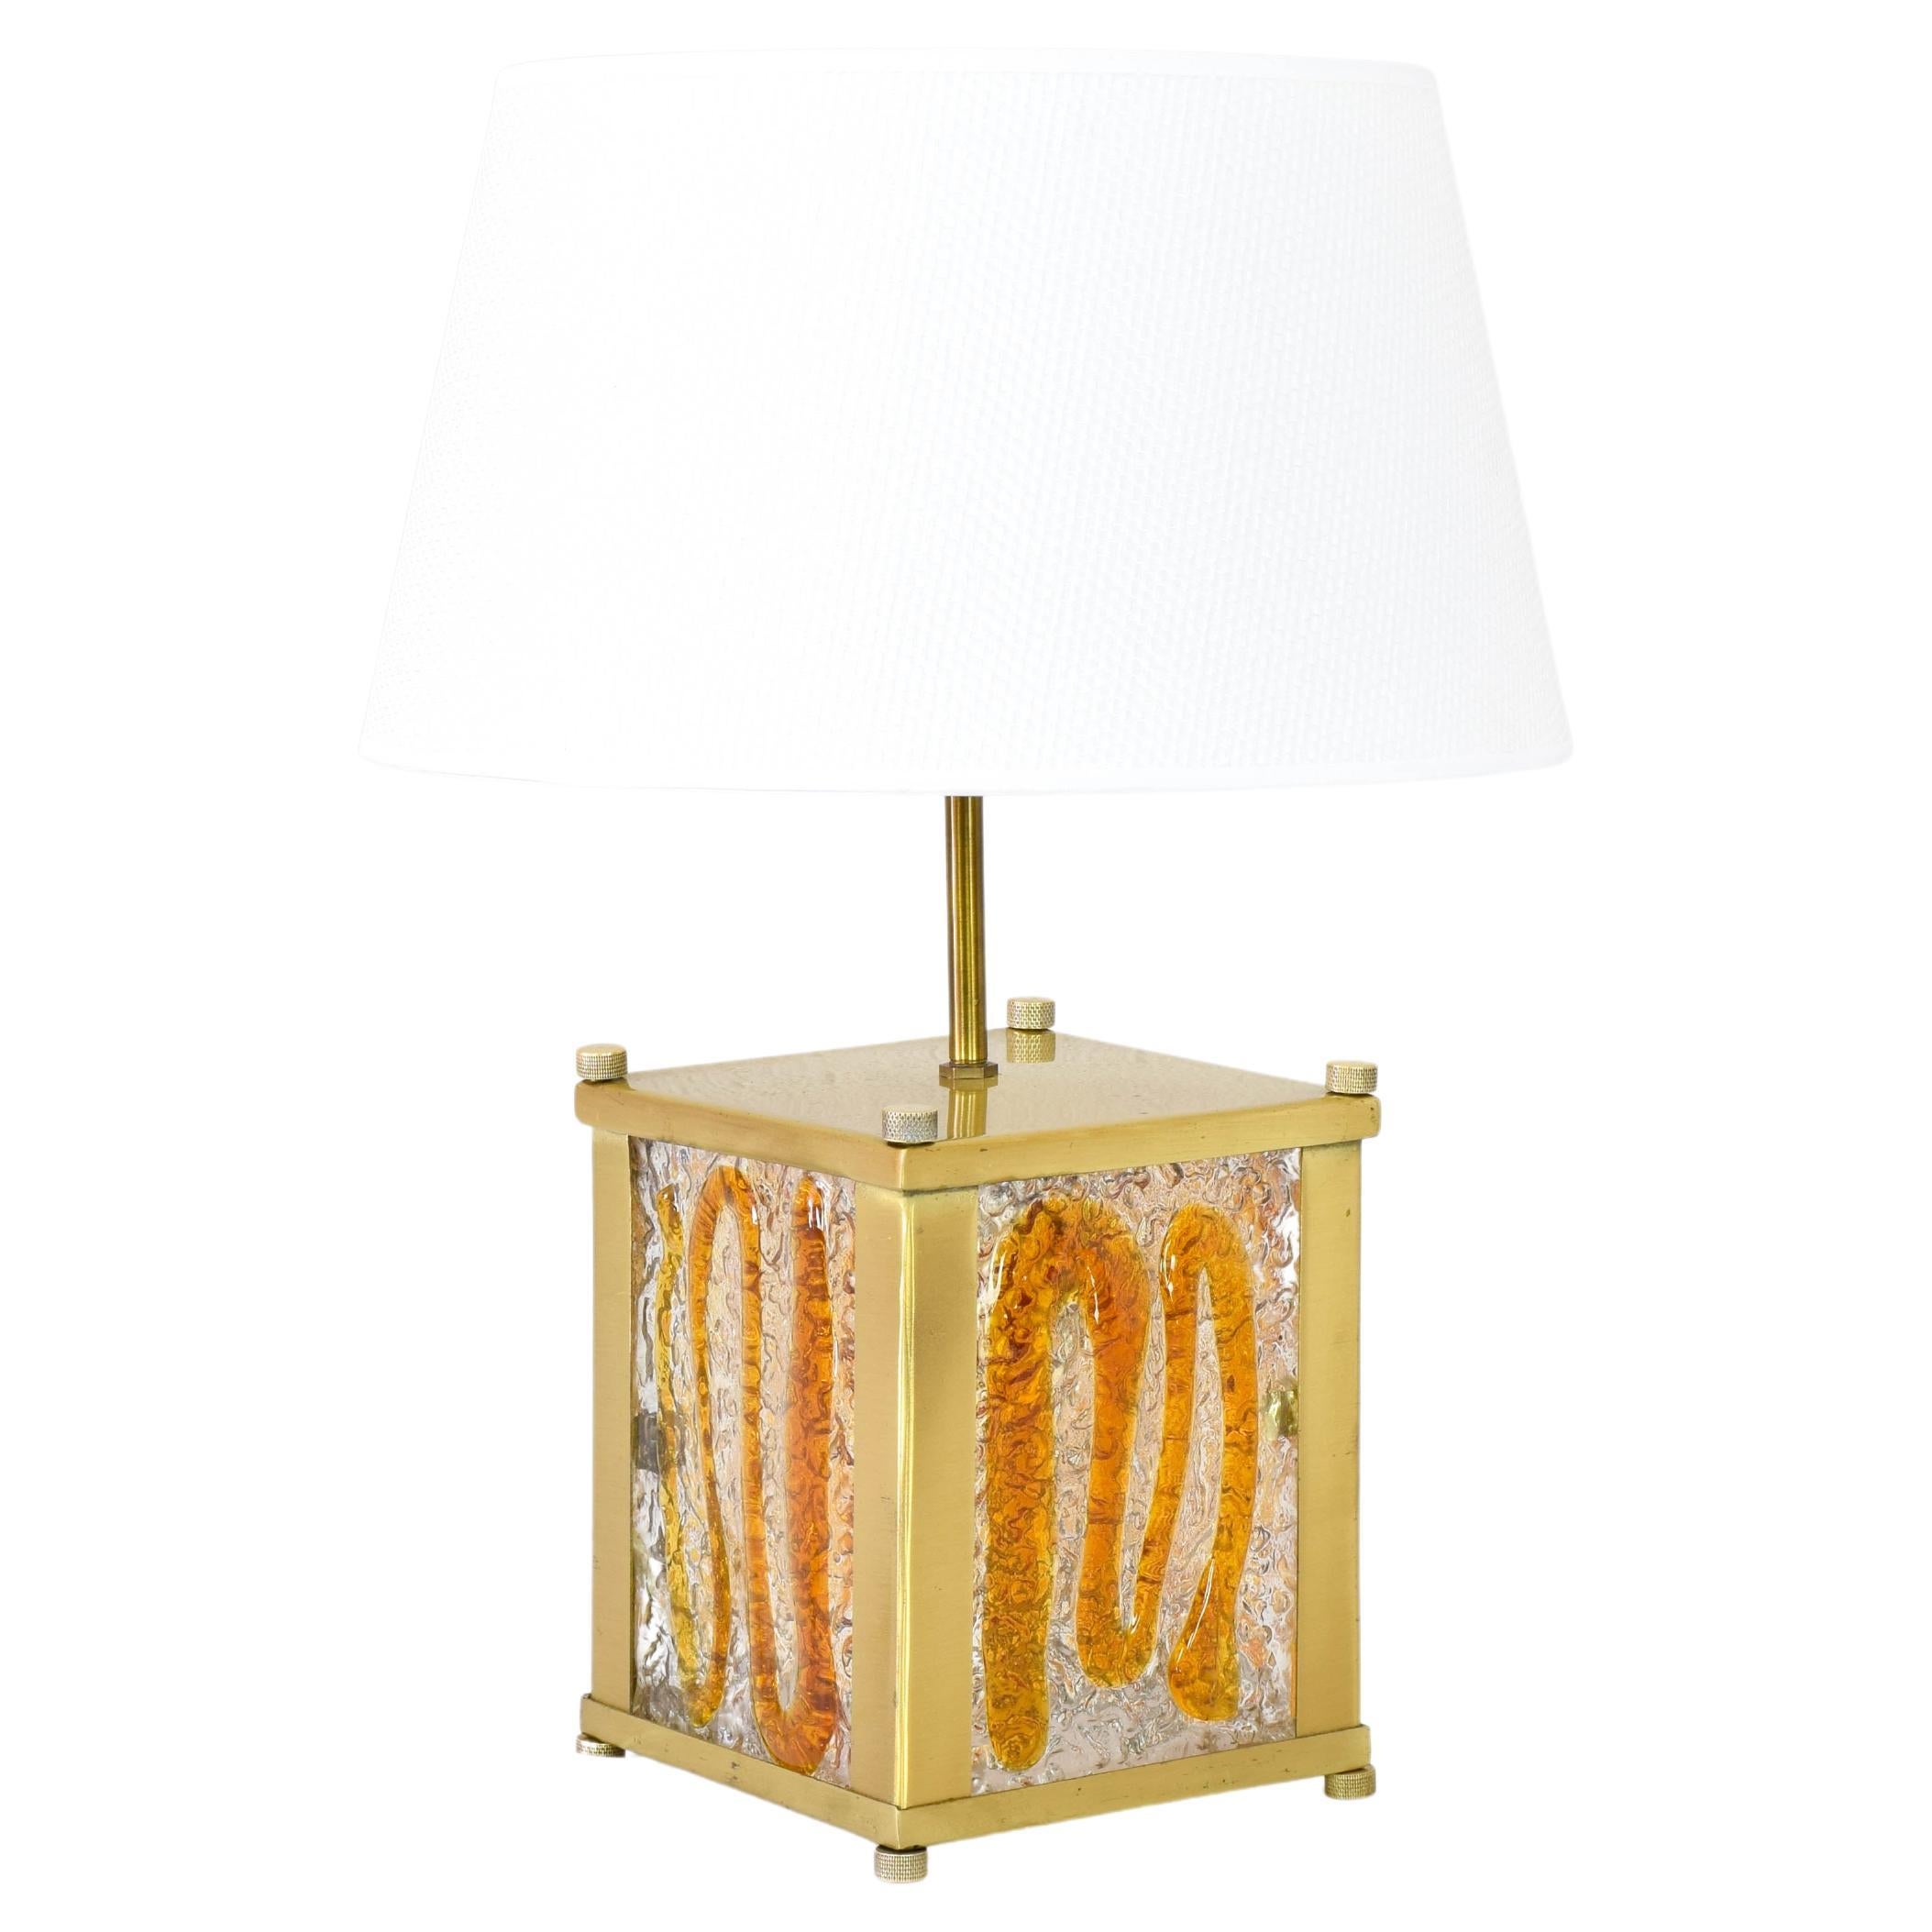 Lampe de table italienne ancienne dans la manière de Toni Zuccheri.
La lampe est composée d'un corps en métal cubique plaqué laiton, de plaques de verre de Murano de couleur ambre et d'un abat-jour.
La lampe possède deux supports, l'un qui éclaire